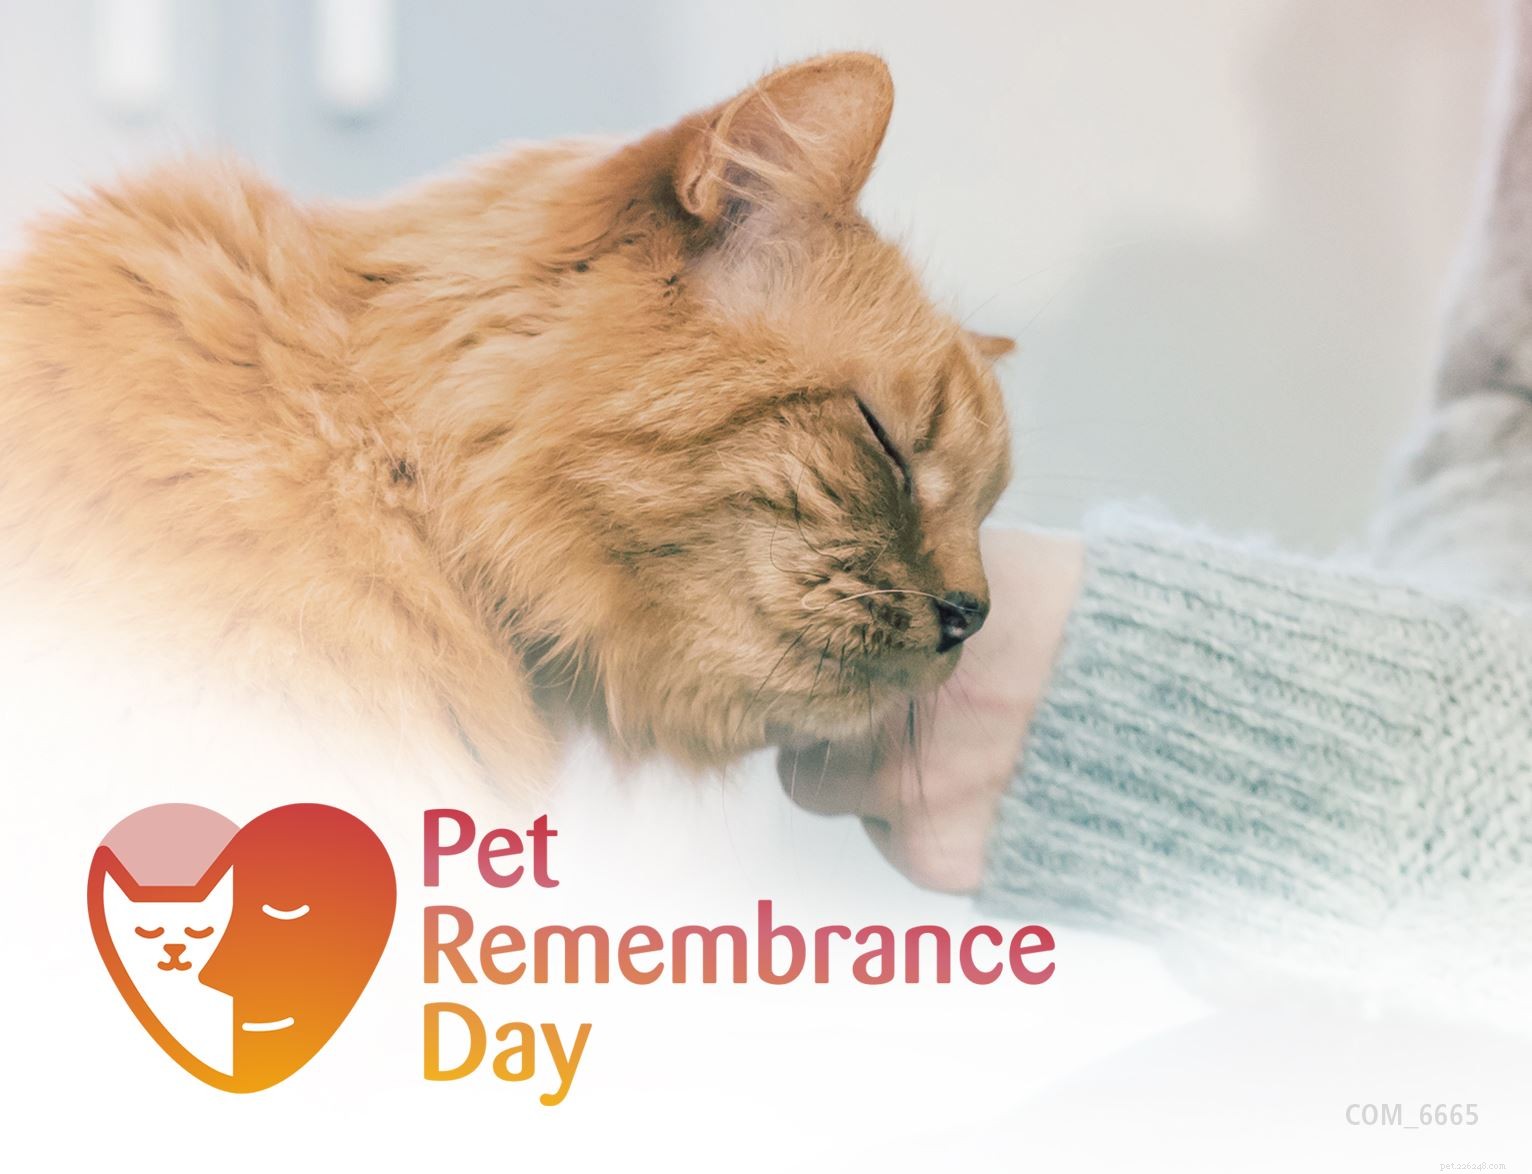 Scopri speciali idee commemorative per onorare la memoria del tuo amato gatto in questo Pet Remembrance Day